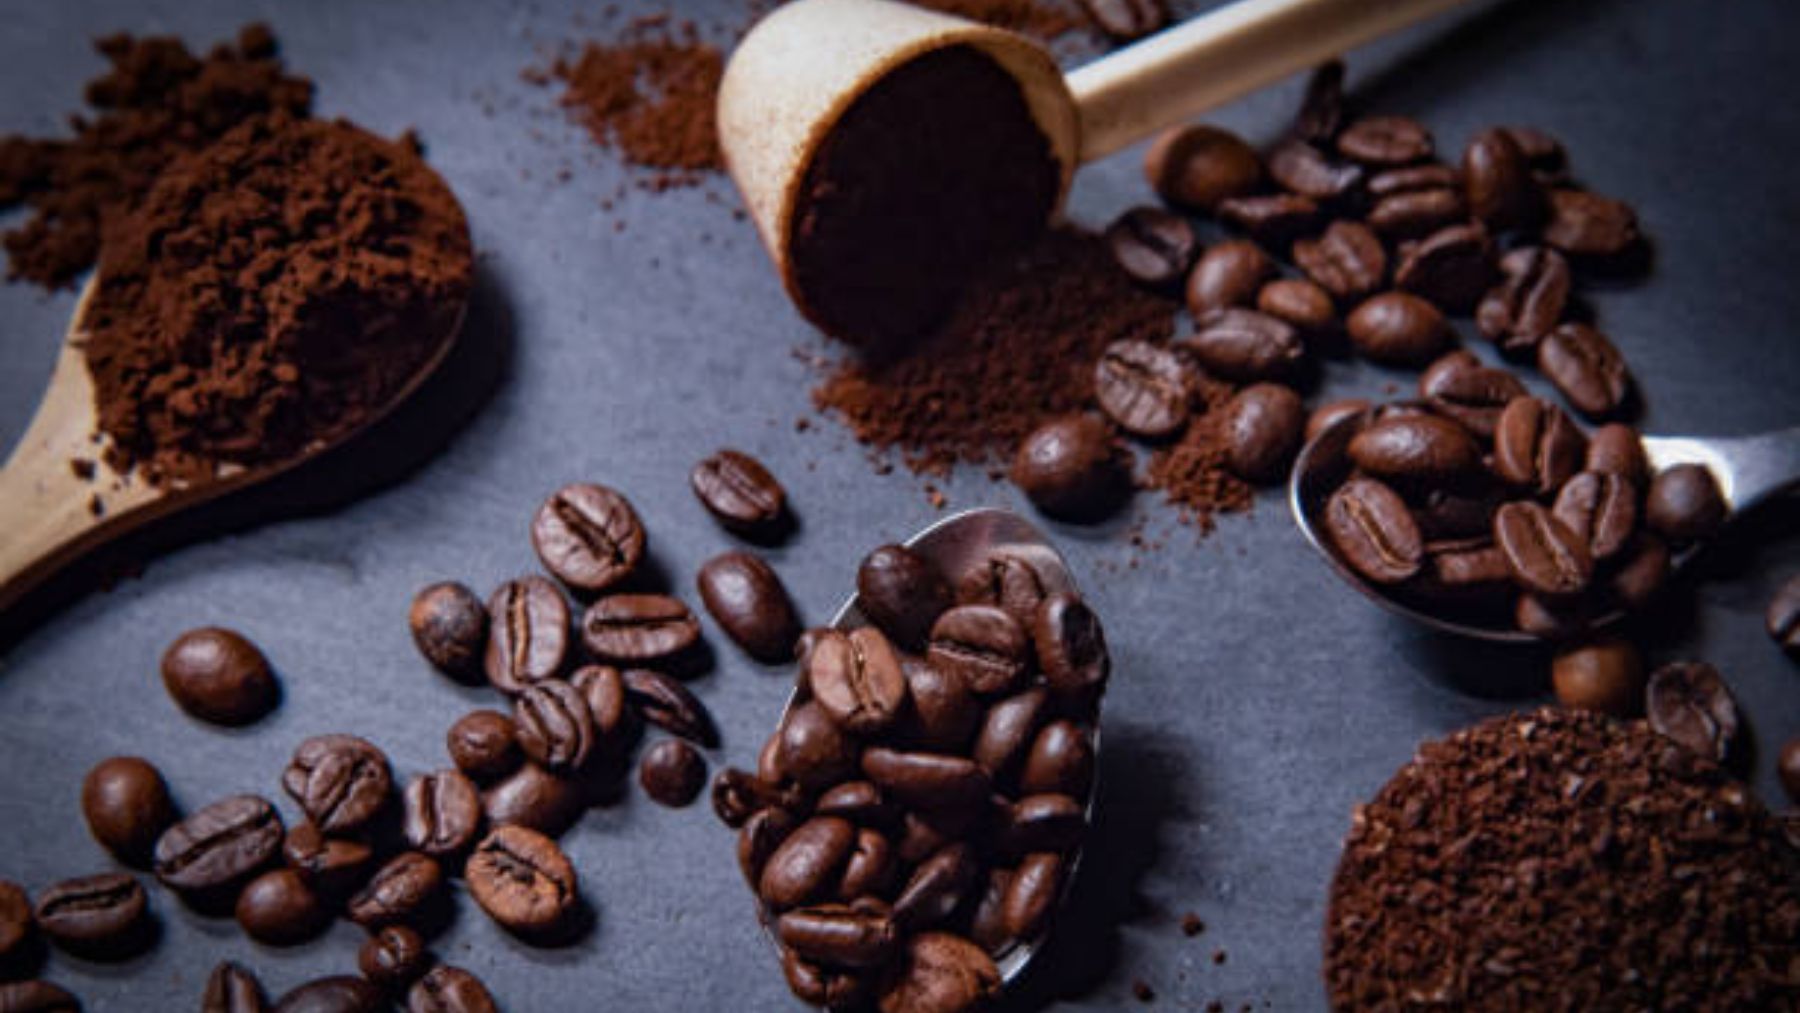 Cafetera que muele el grano de café 